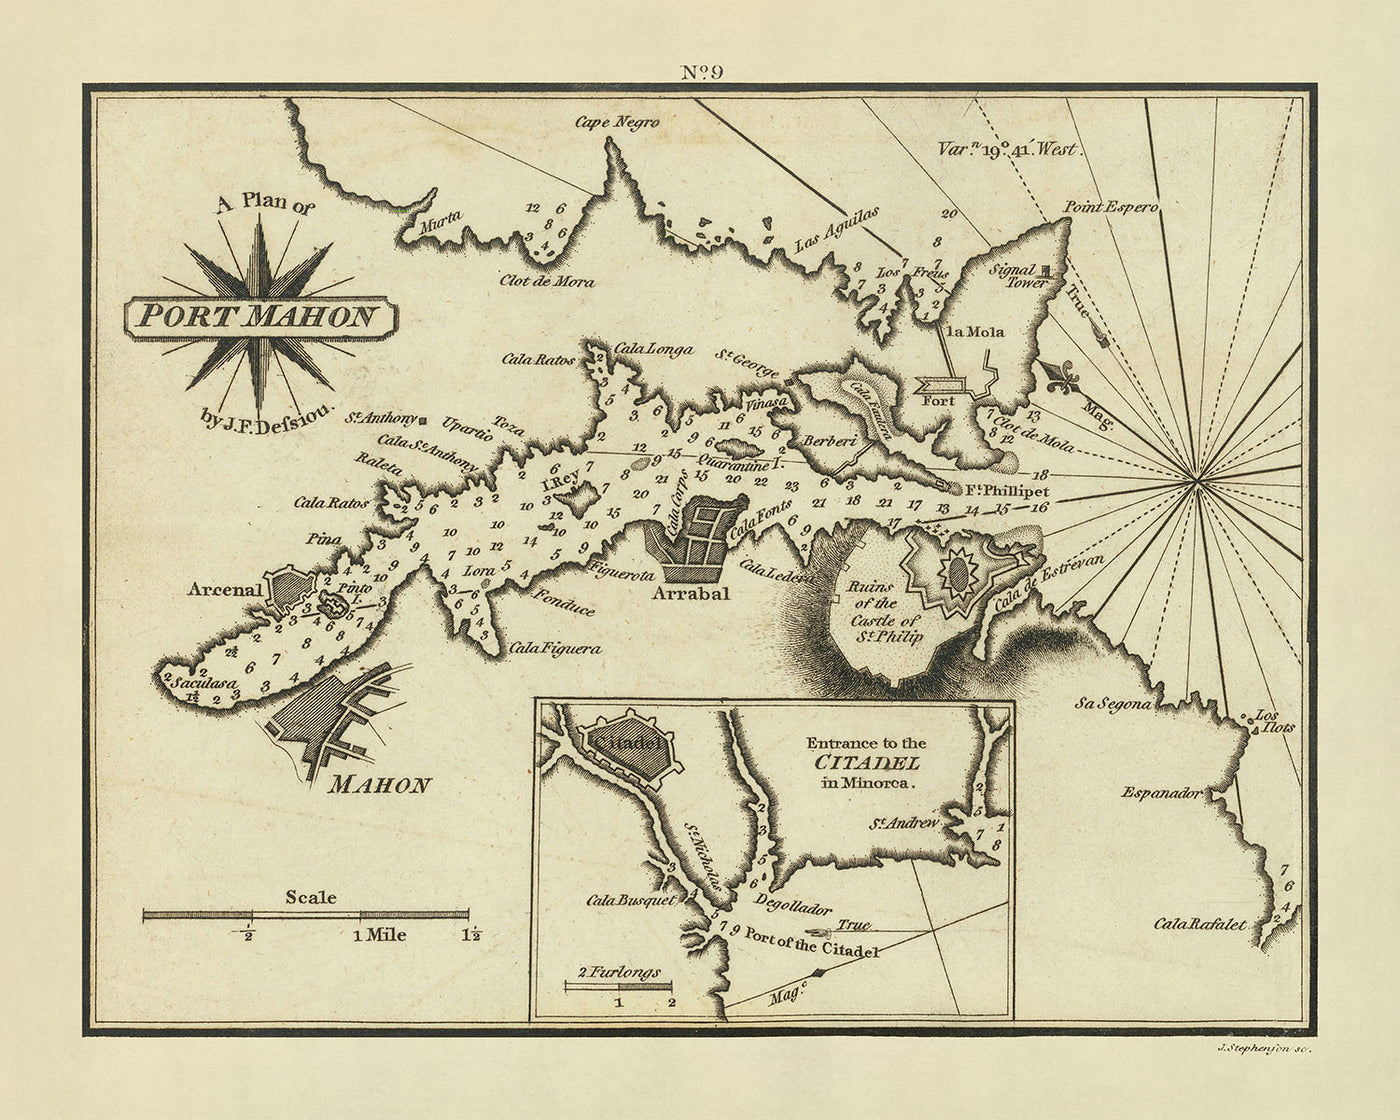 Alte Seekarte von Port Mahon von Heather, 1802: Zitadelle, Fort St. Philip, Lazaretto